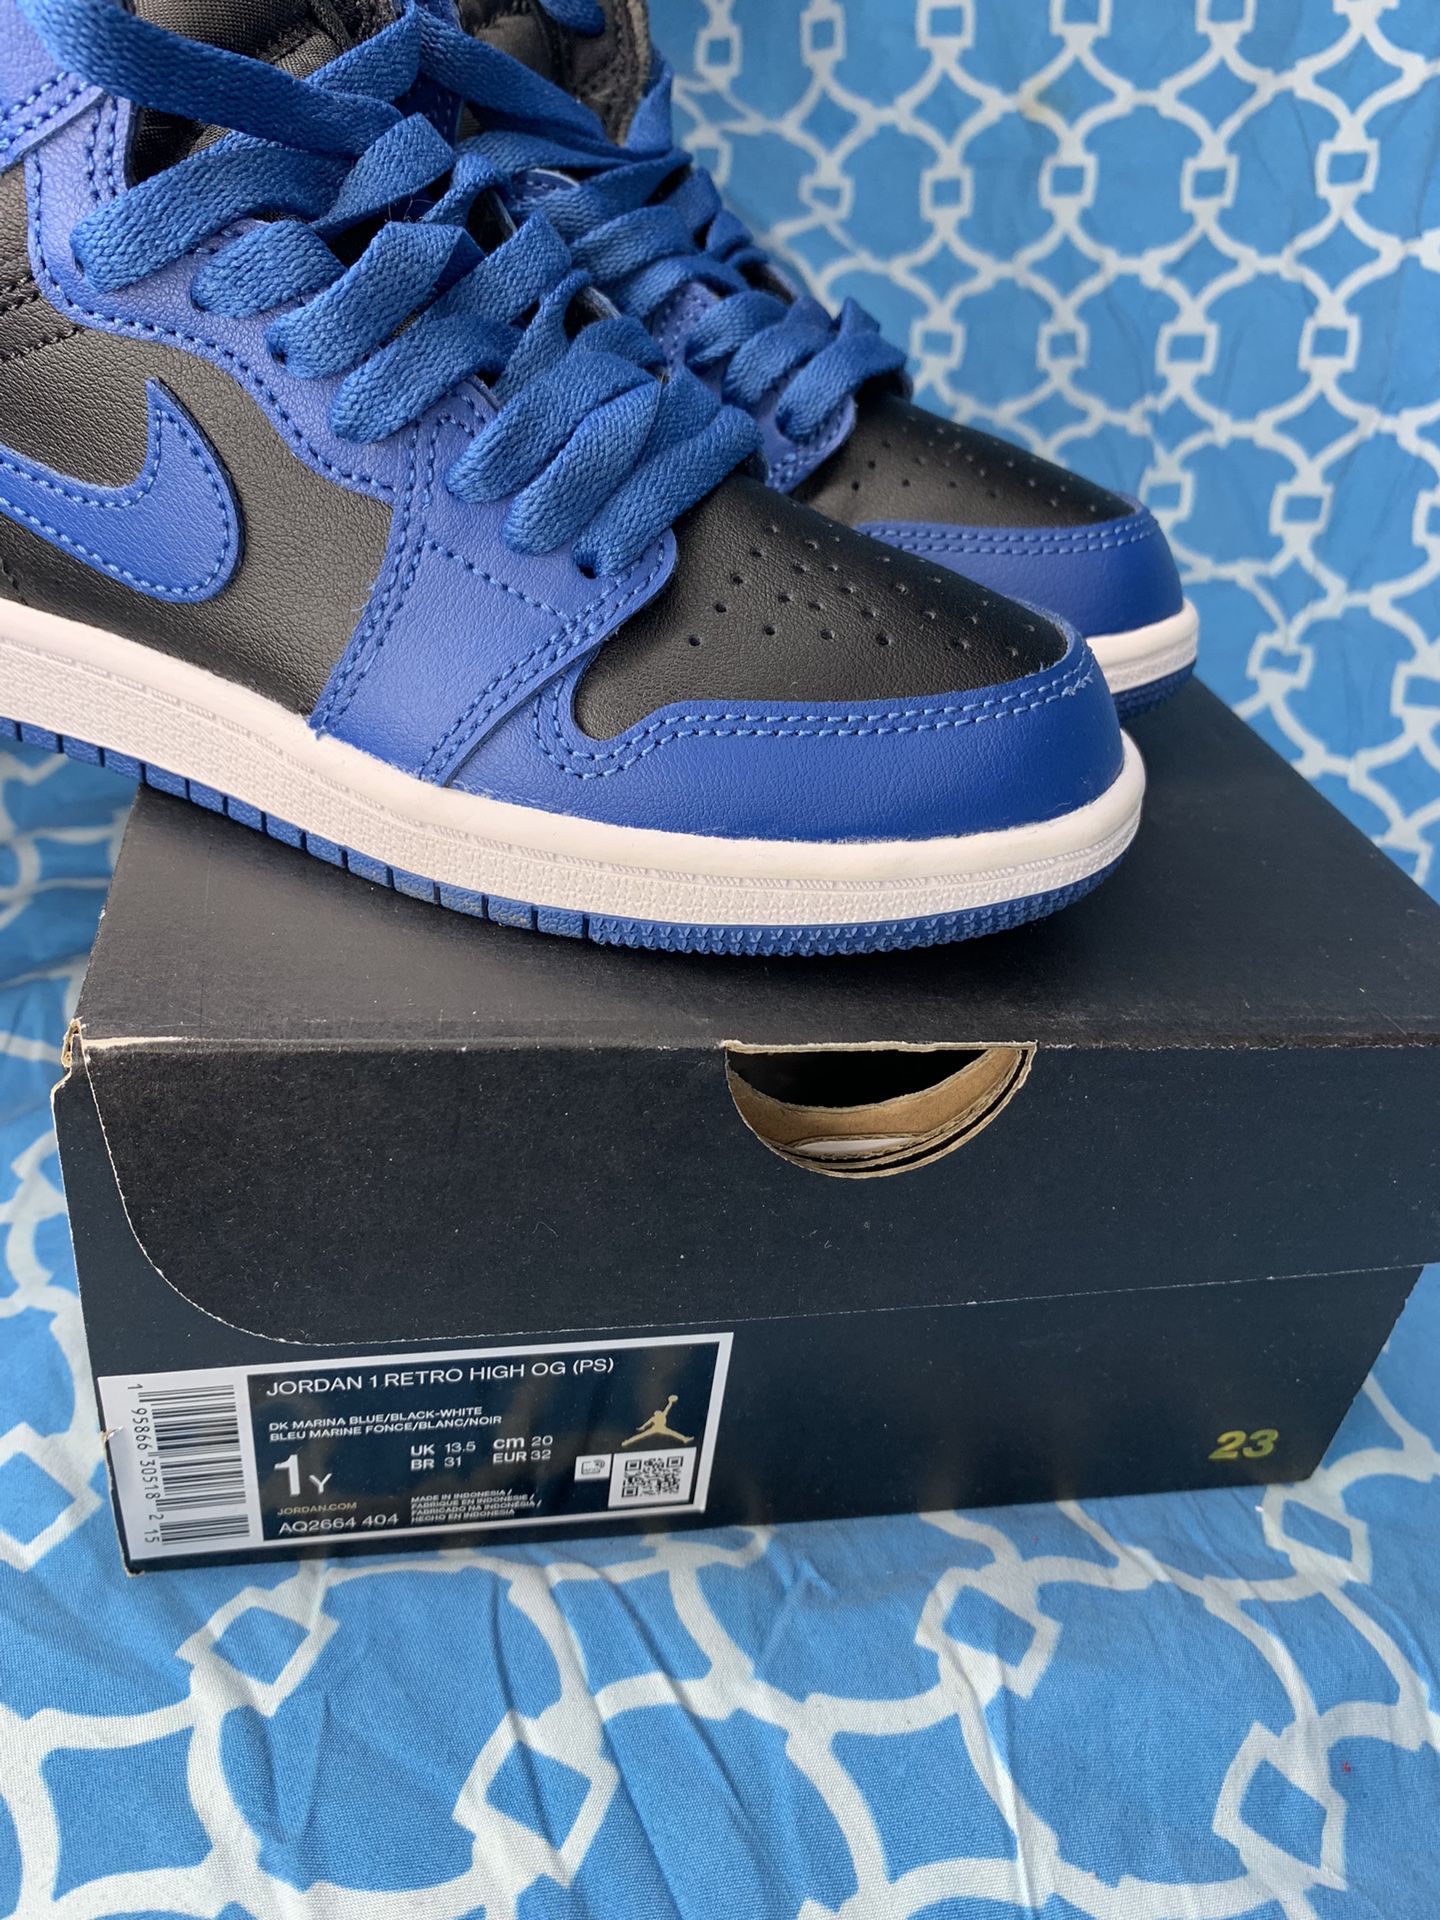 Nike Air Jordan 1 high PS size 1y Dark Marina blue retro og royal white